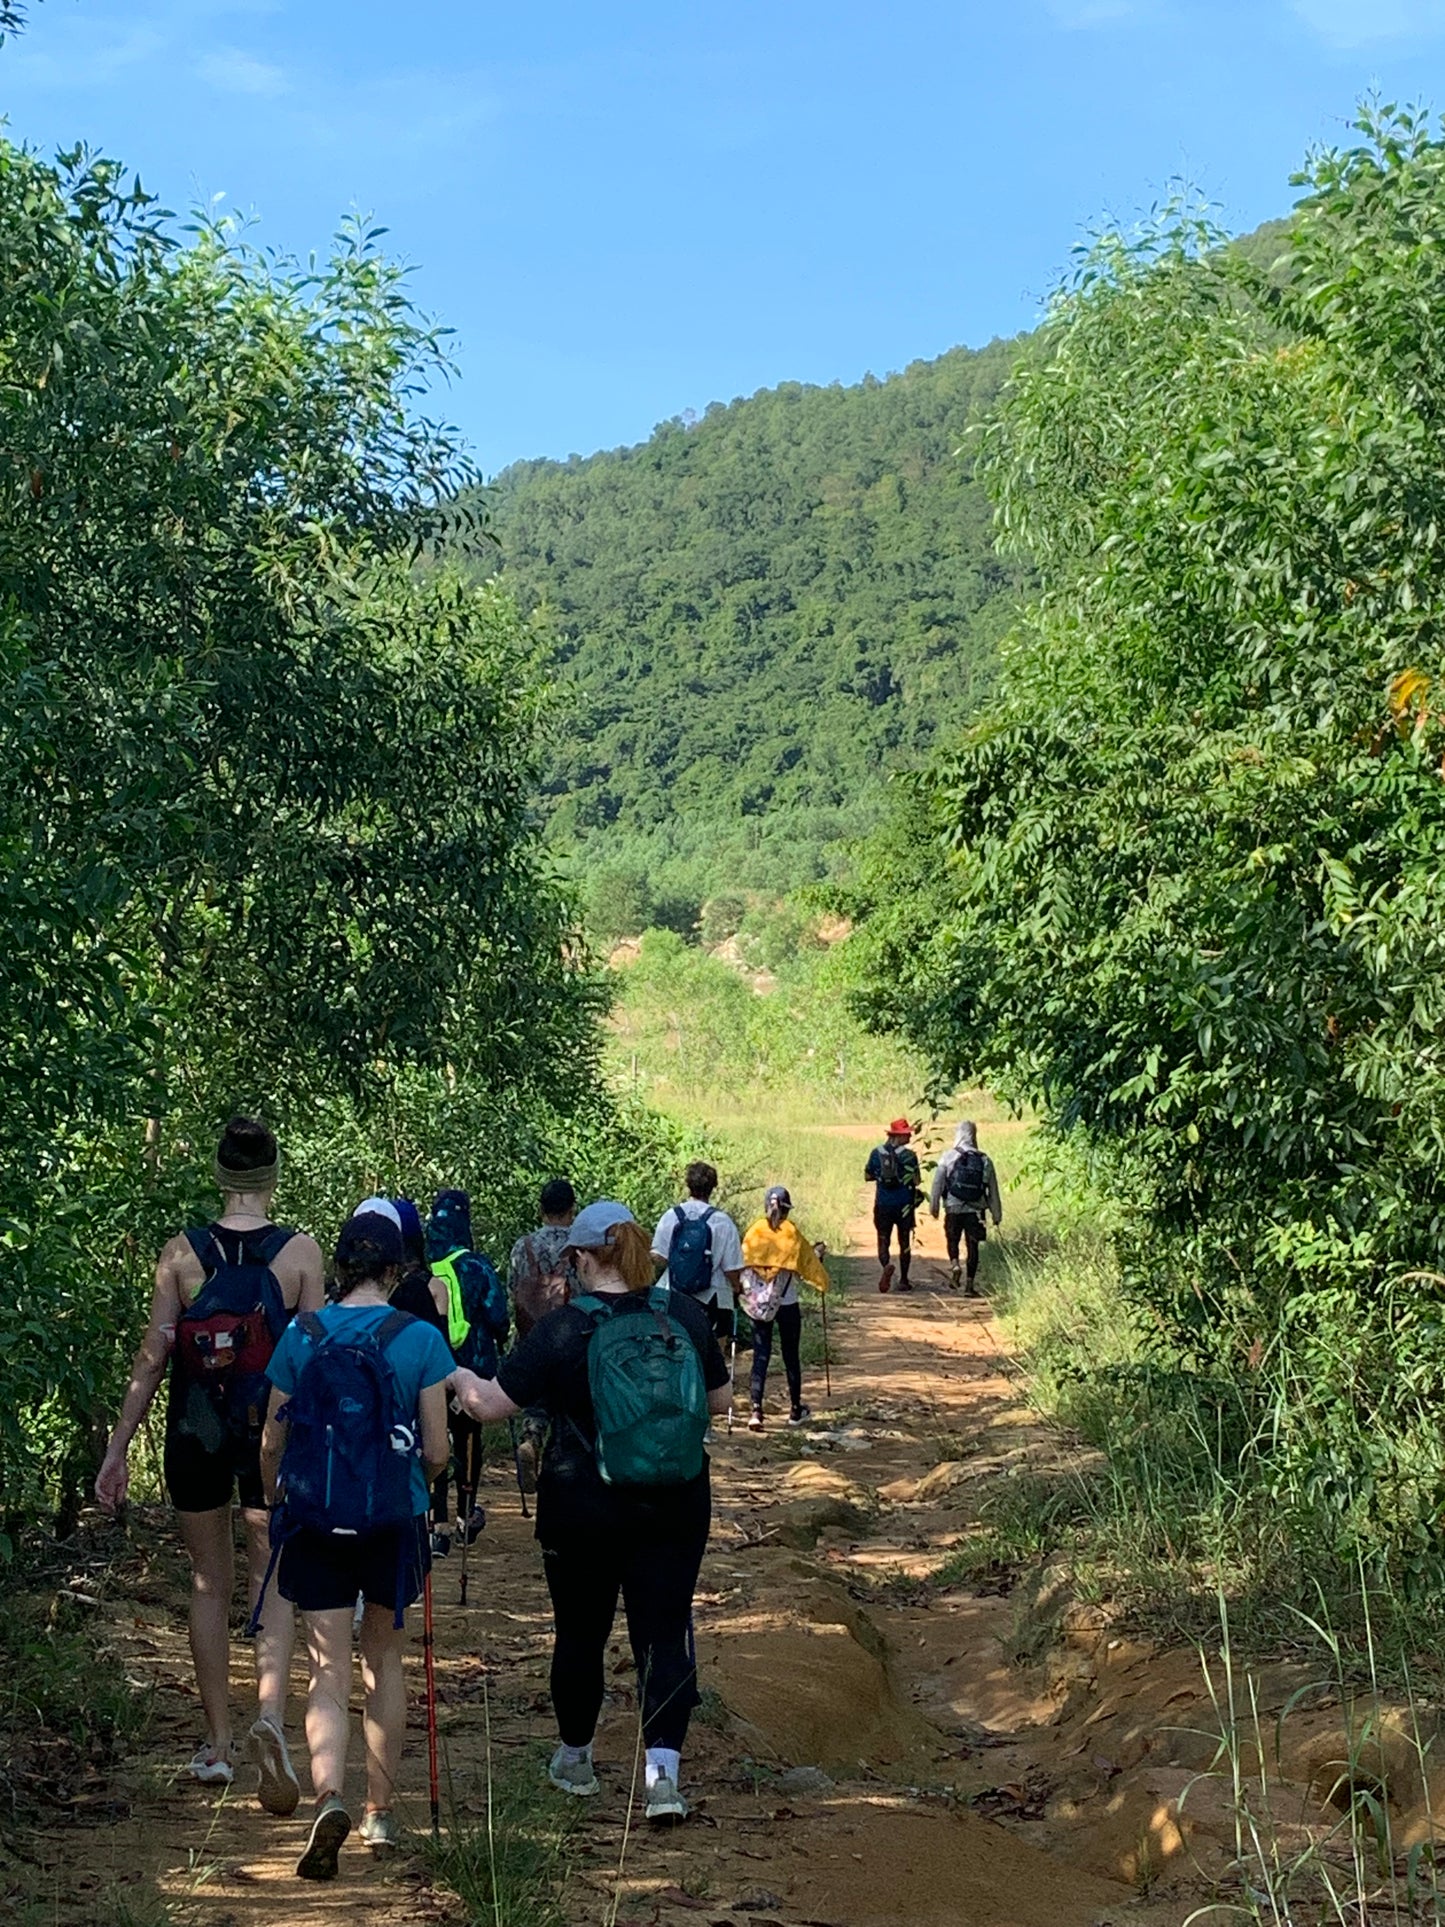 86A: Montaña Tóc Tiên, senderos de bambú hasta el mirador panorámico